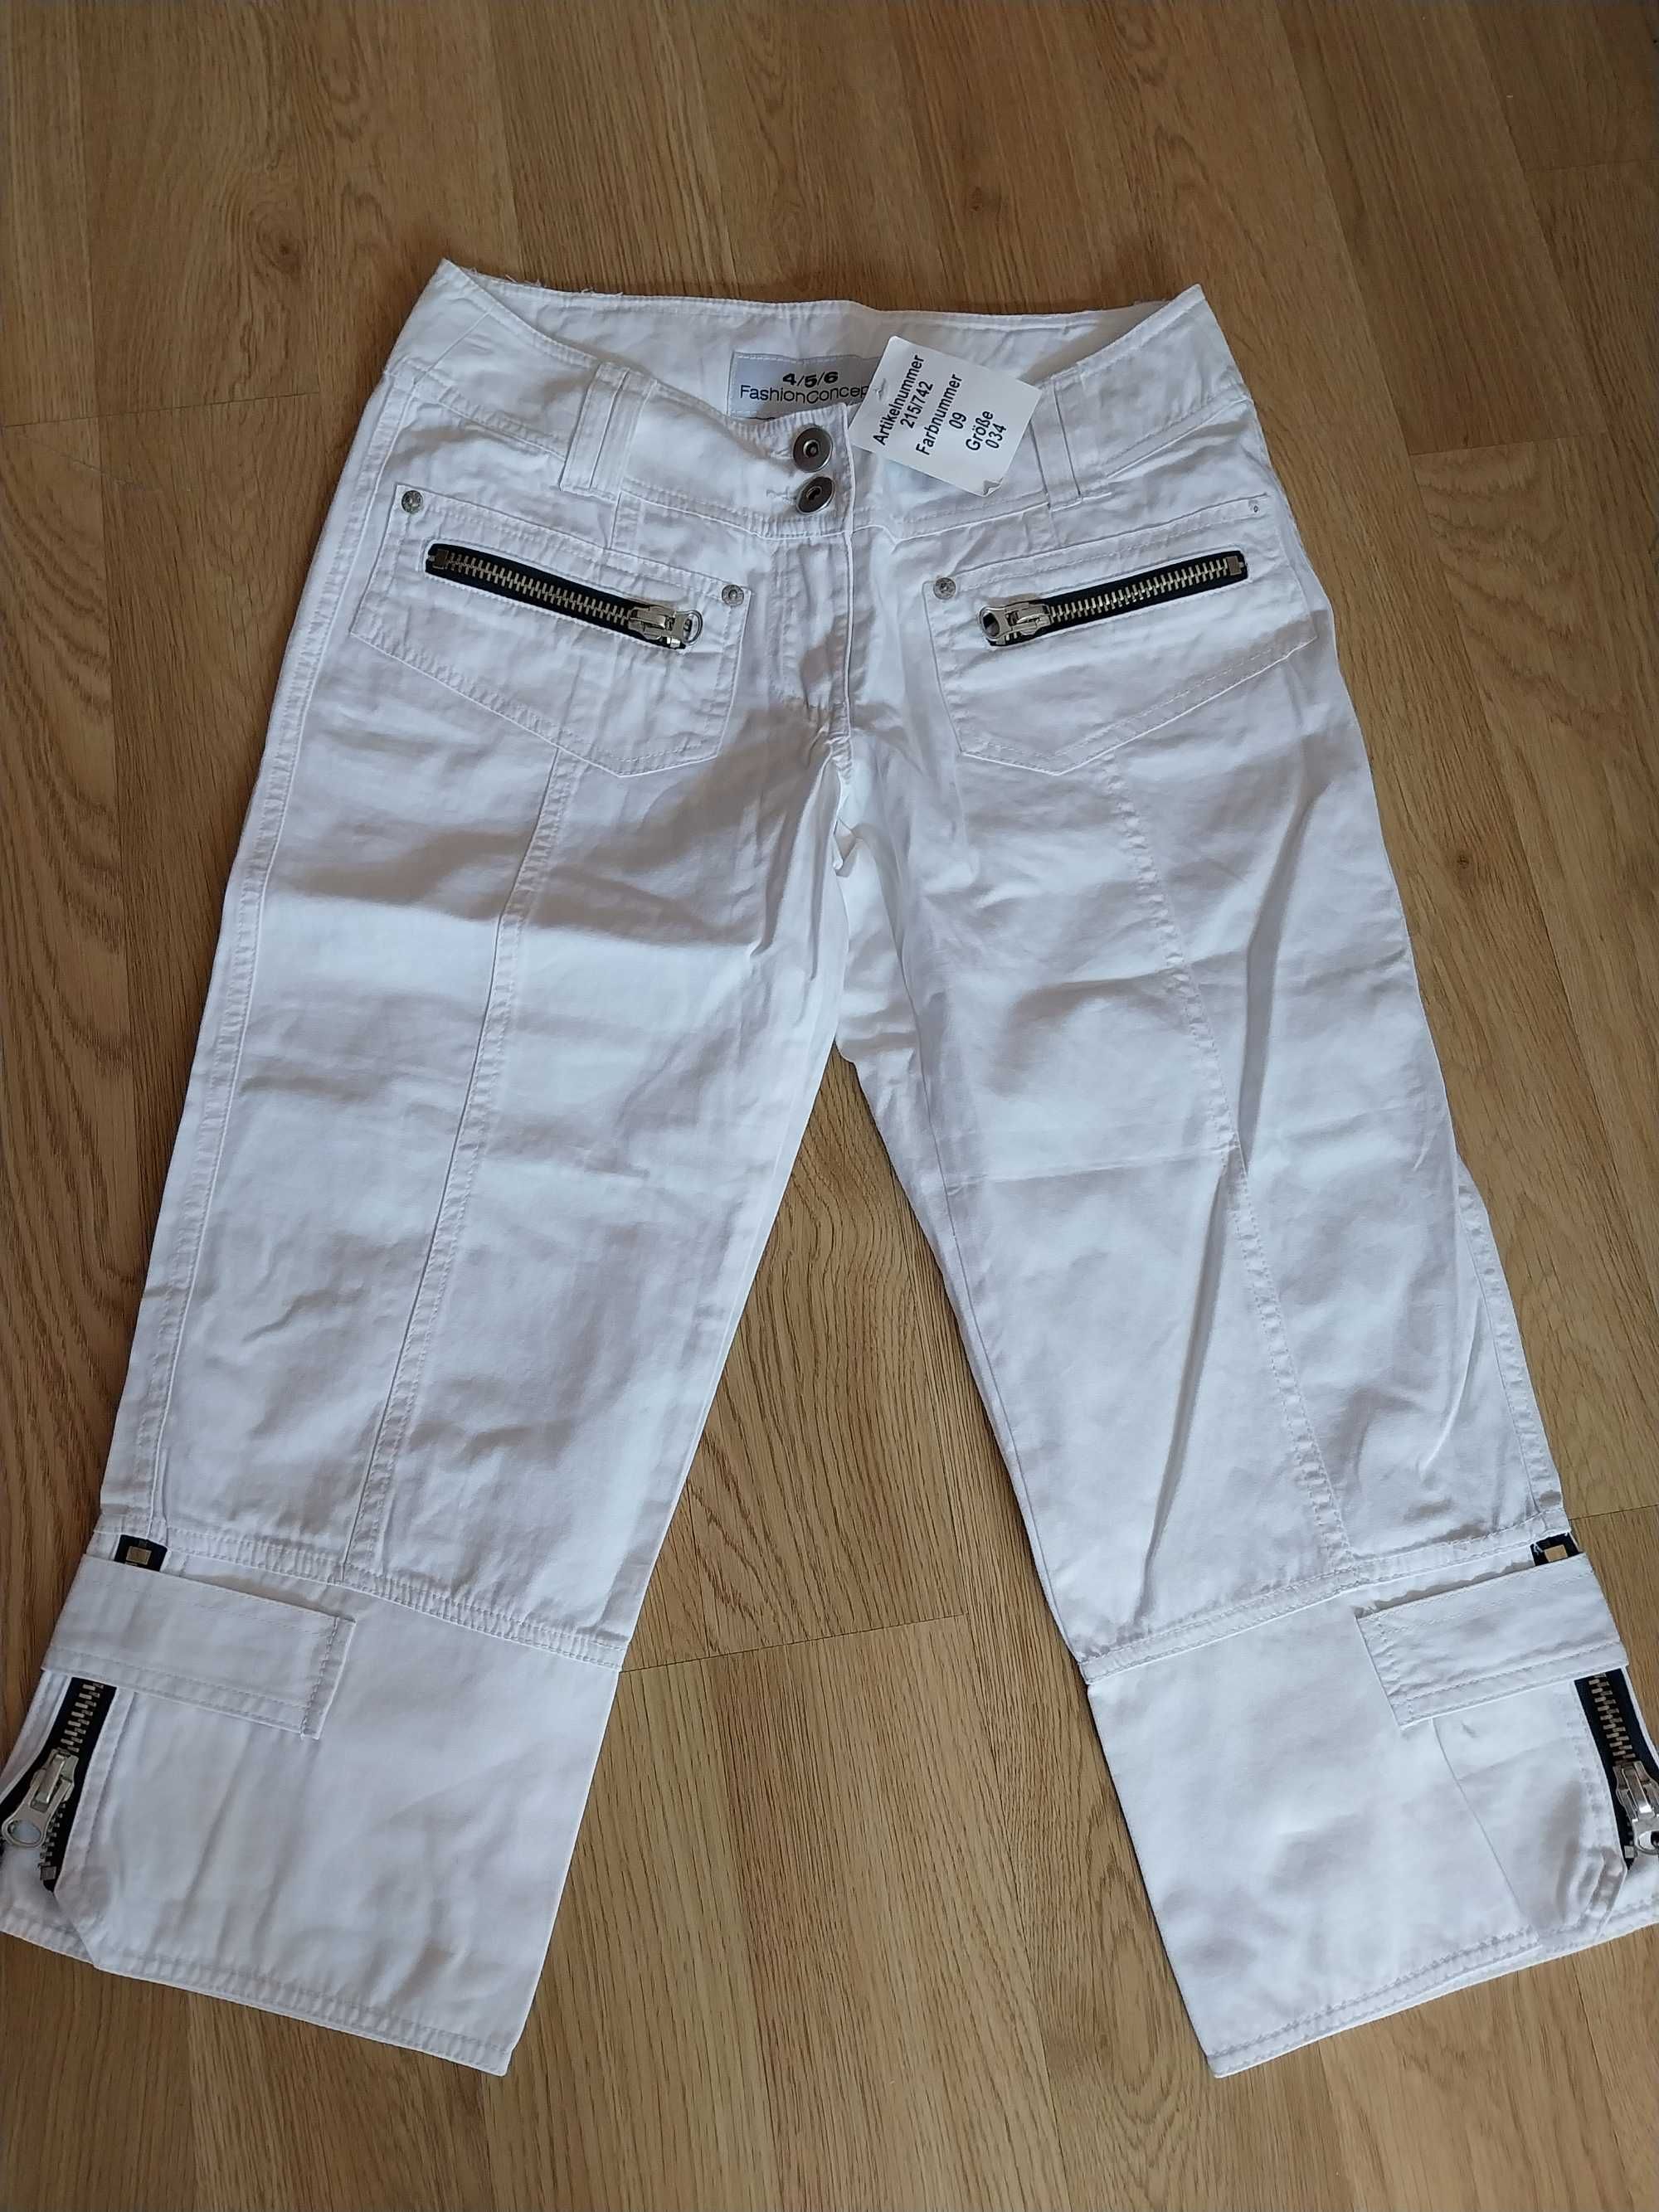 Fashion Concept S/M - białe spodnie rybaczki suwaki - Tanio ! Okazja !